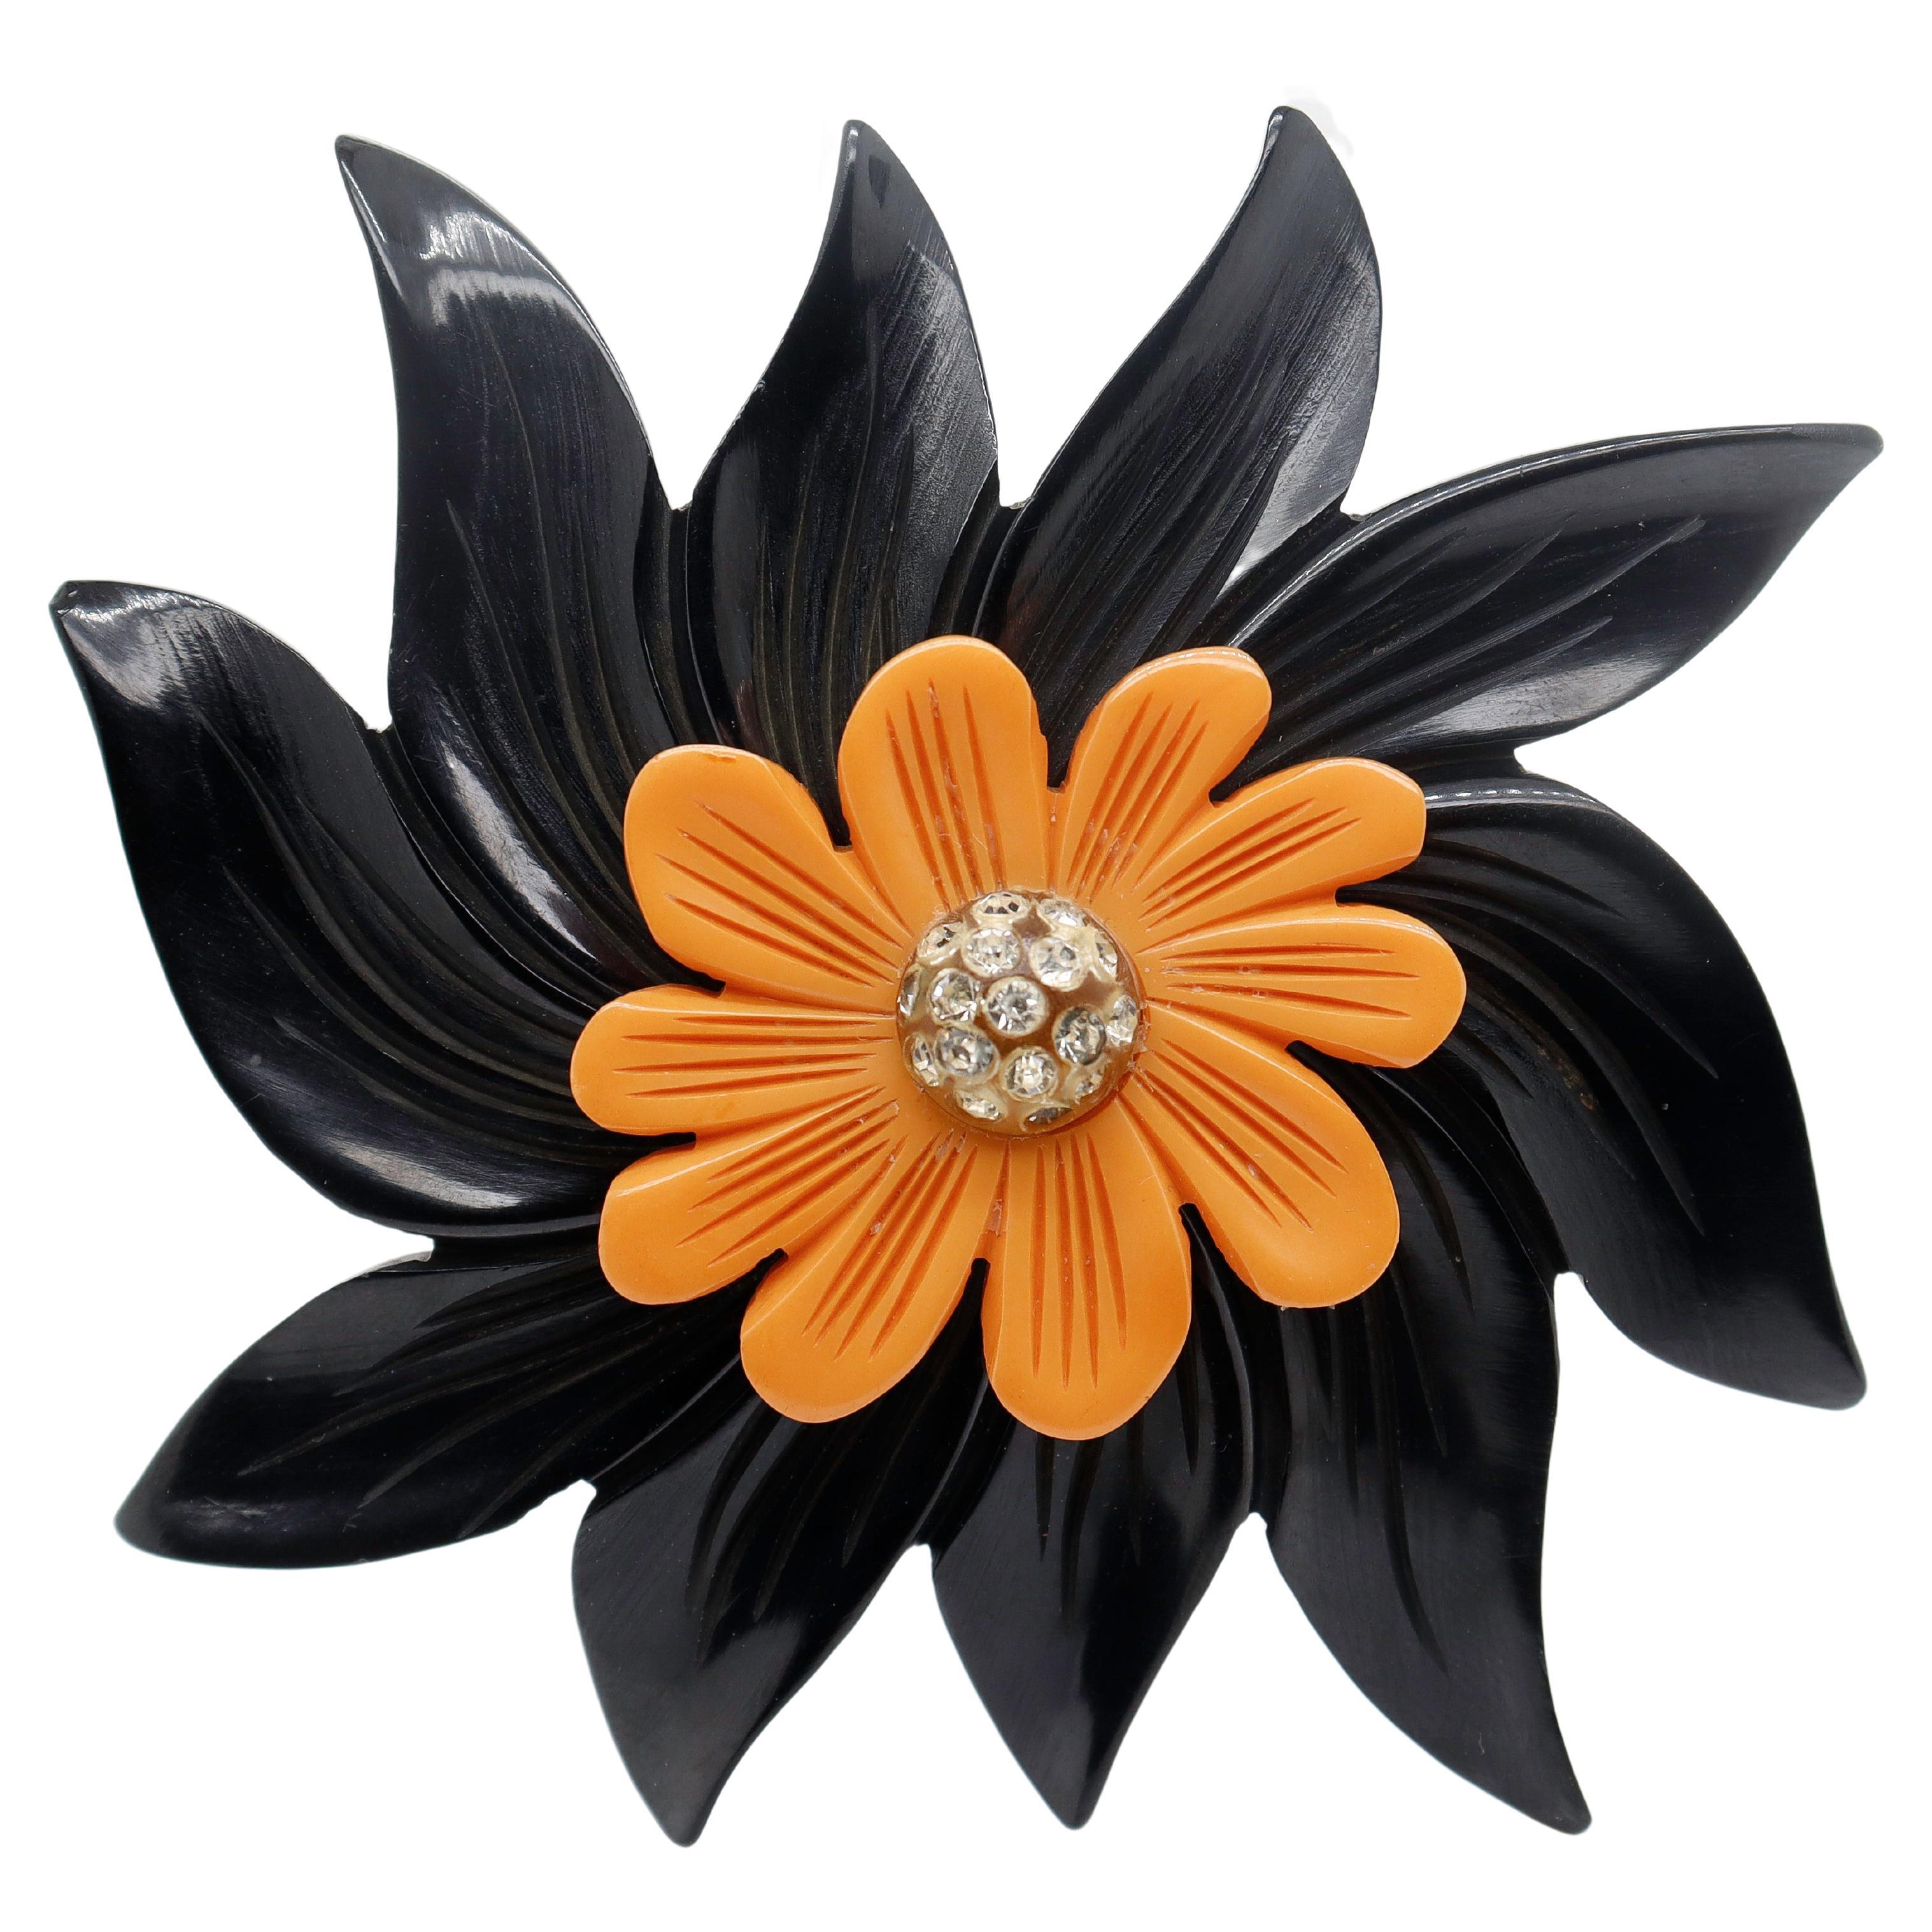 2-Color Black & Orange Bakelite Flower Brooch or Pin with Rhinestones For Sale